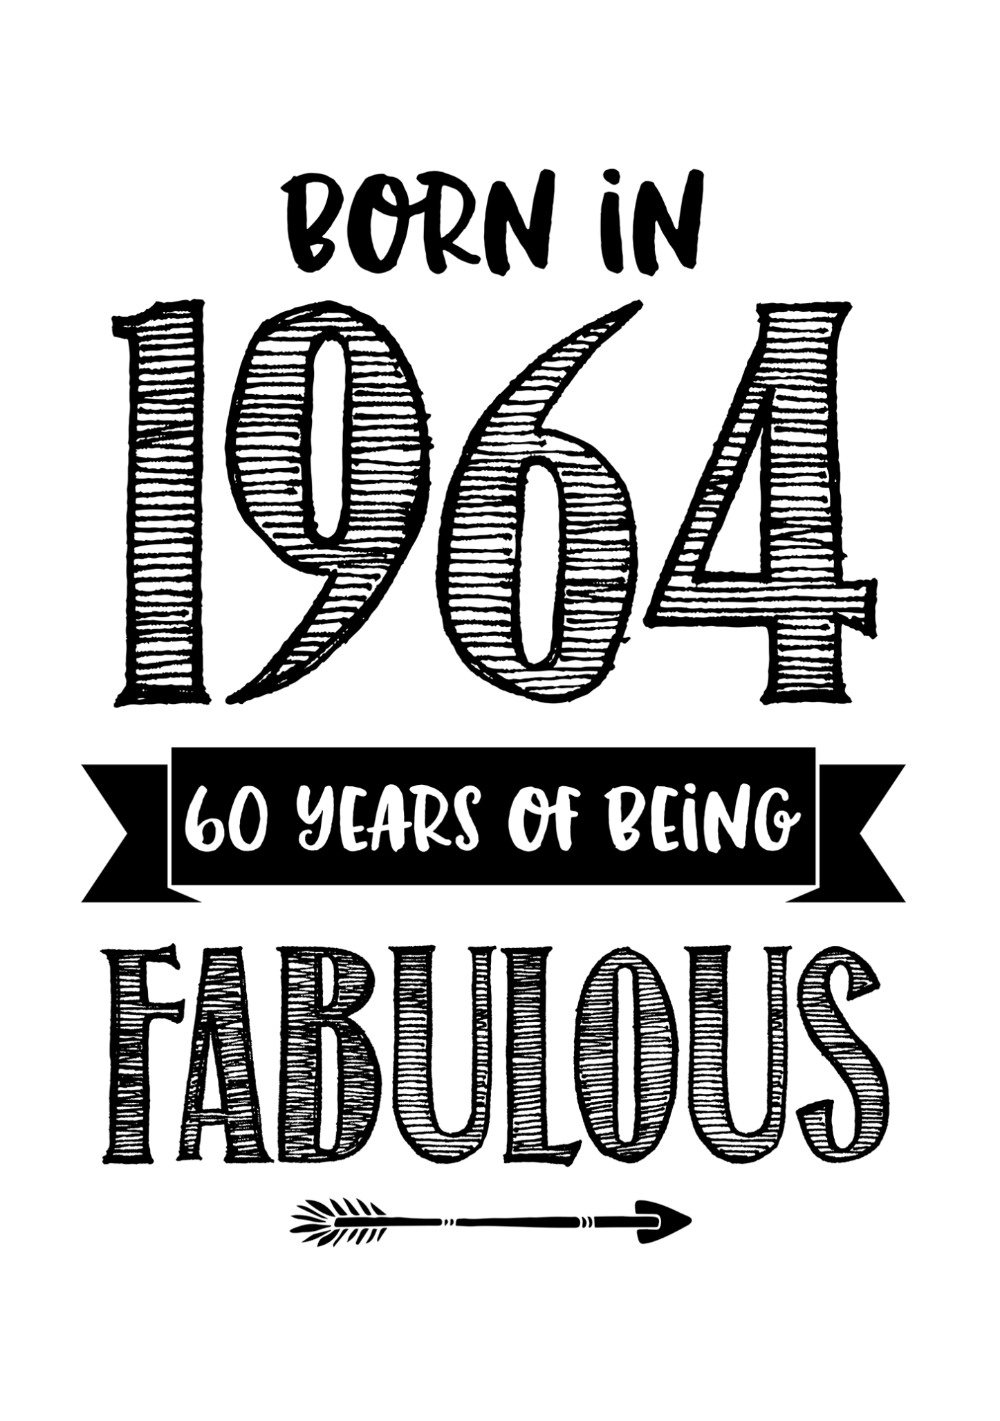 Verjaardagskaart born in 1961 60 years of being fabulous Voorkant